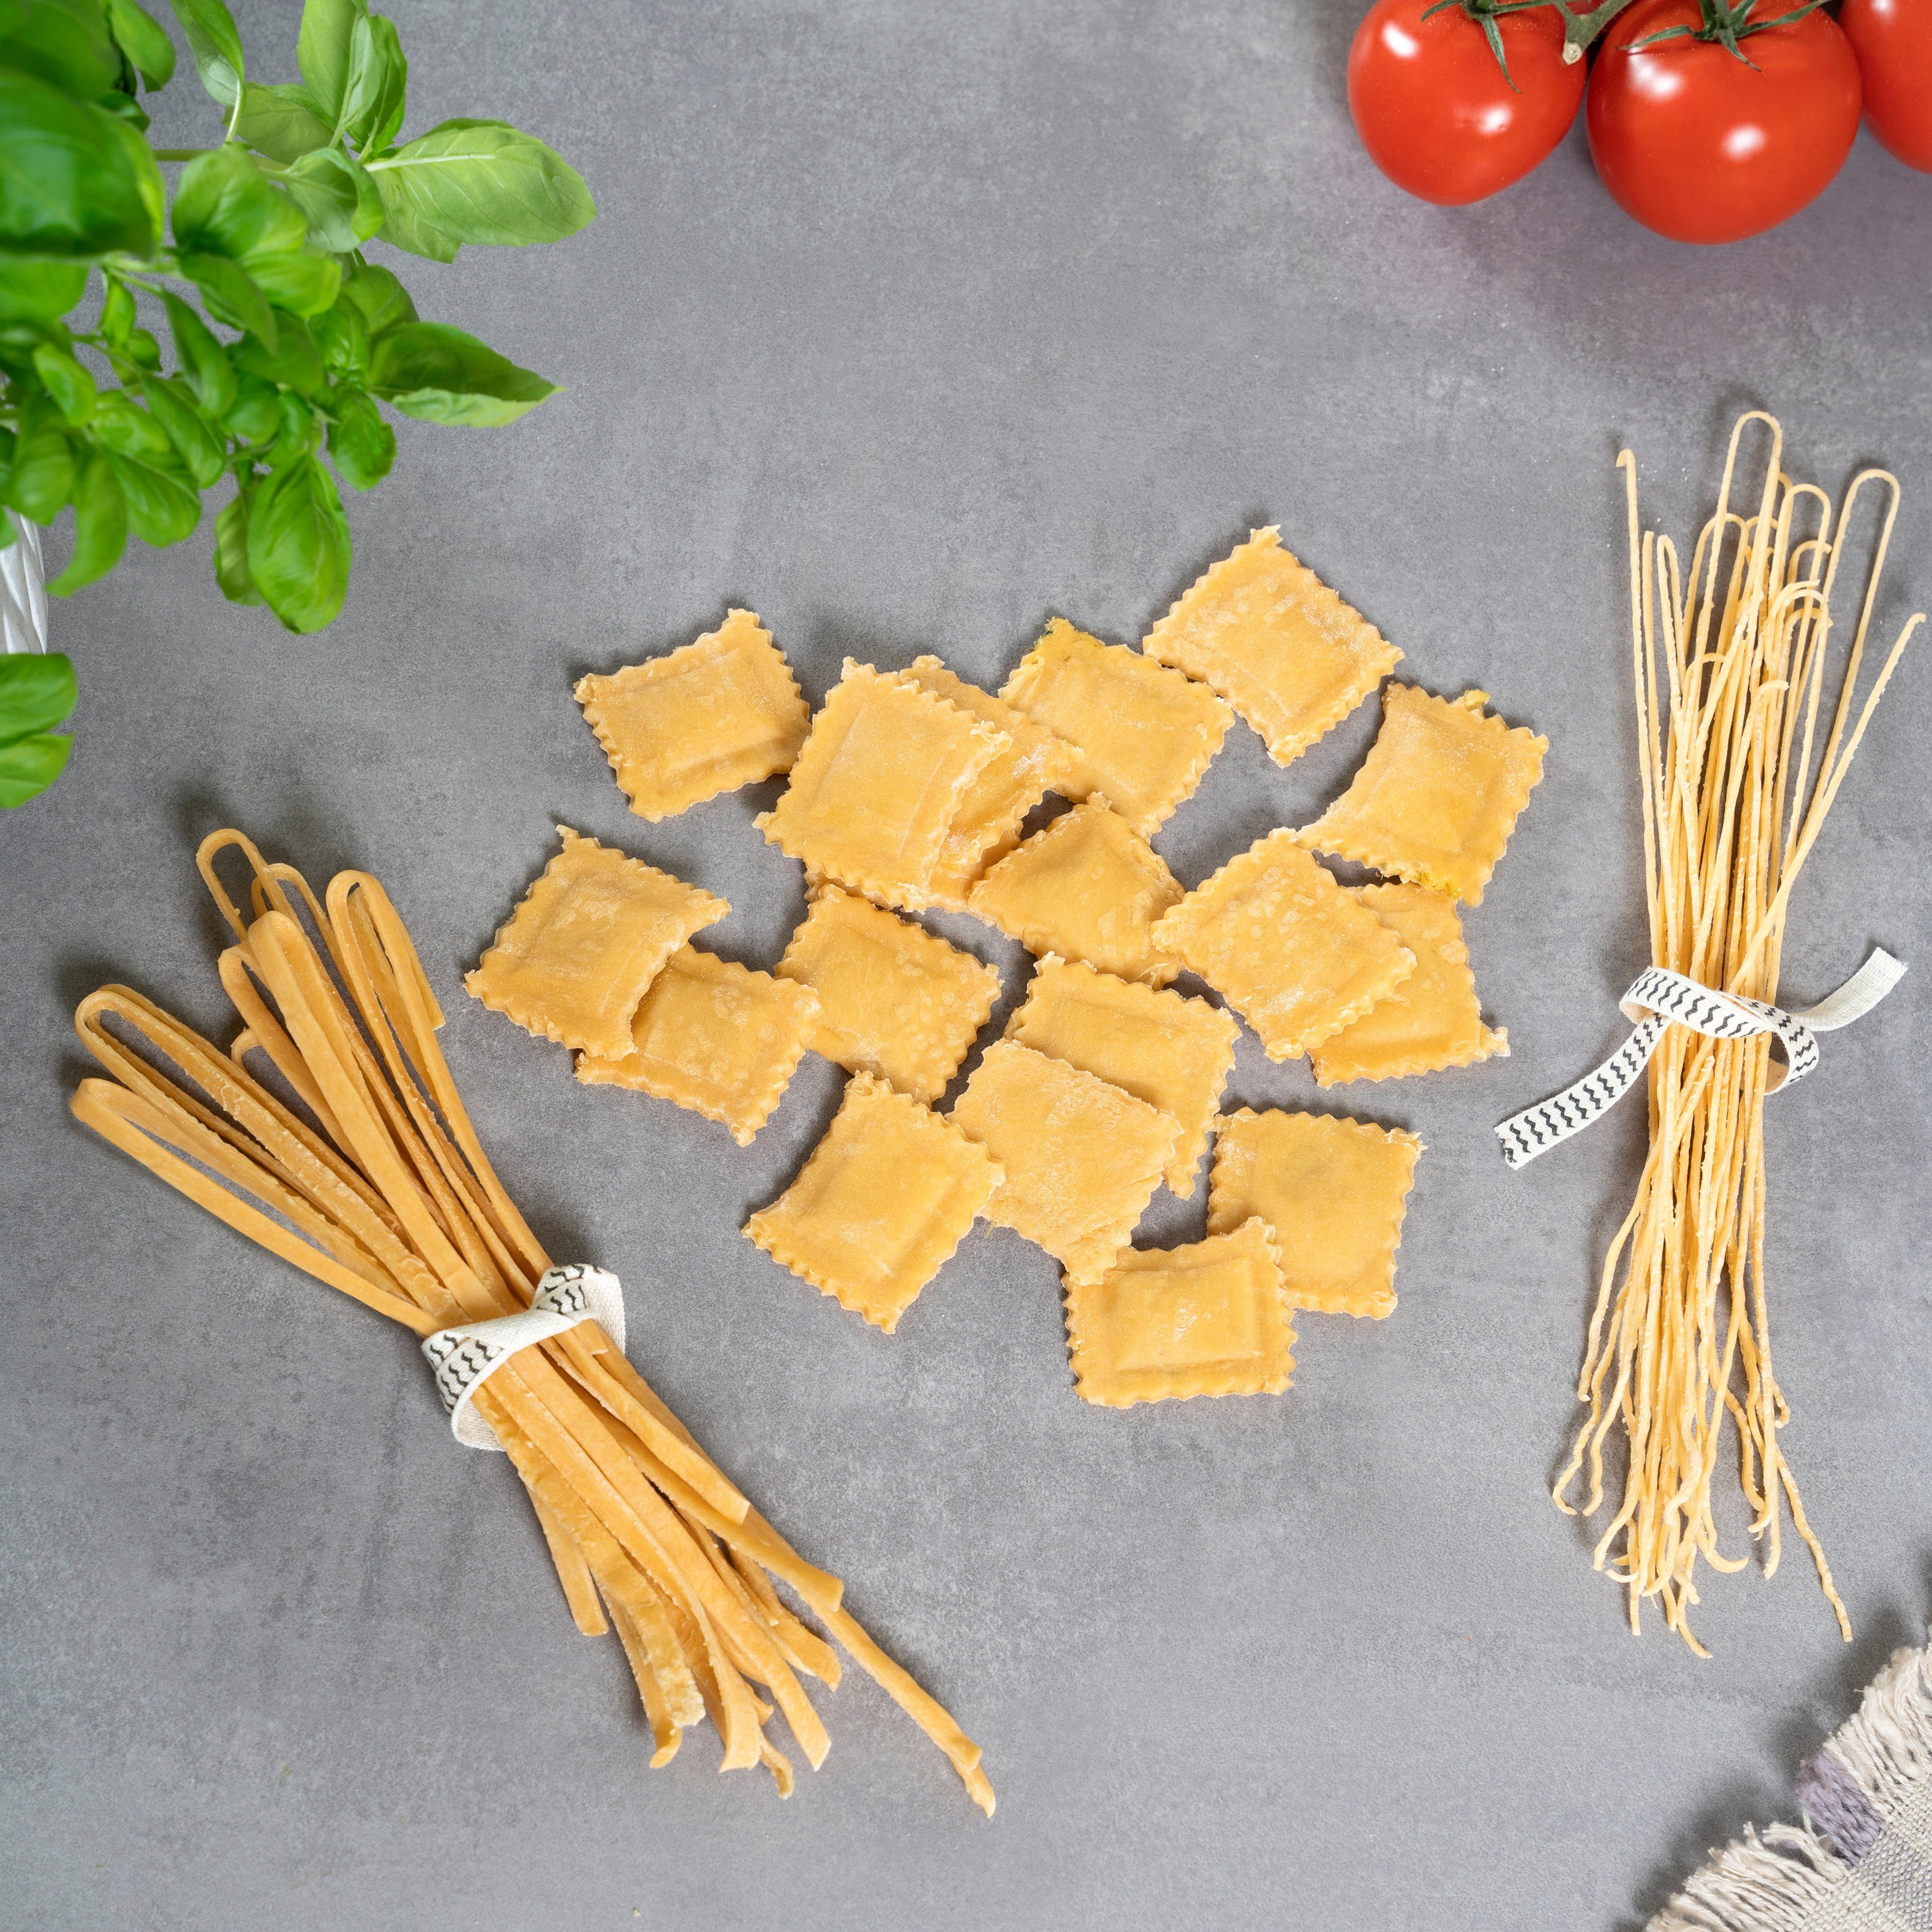 Nudelmaschine bremermann Spaghetti, Pasta, für bremermann und (7 Ravioli Nudelmaschine Lasagne